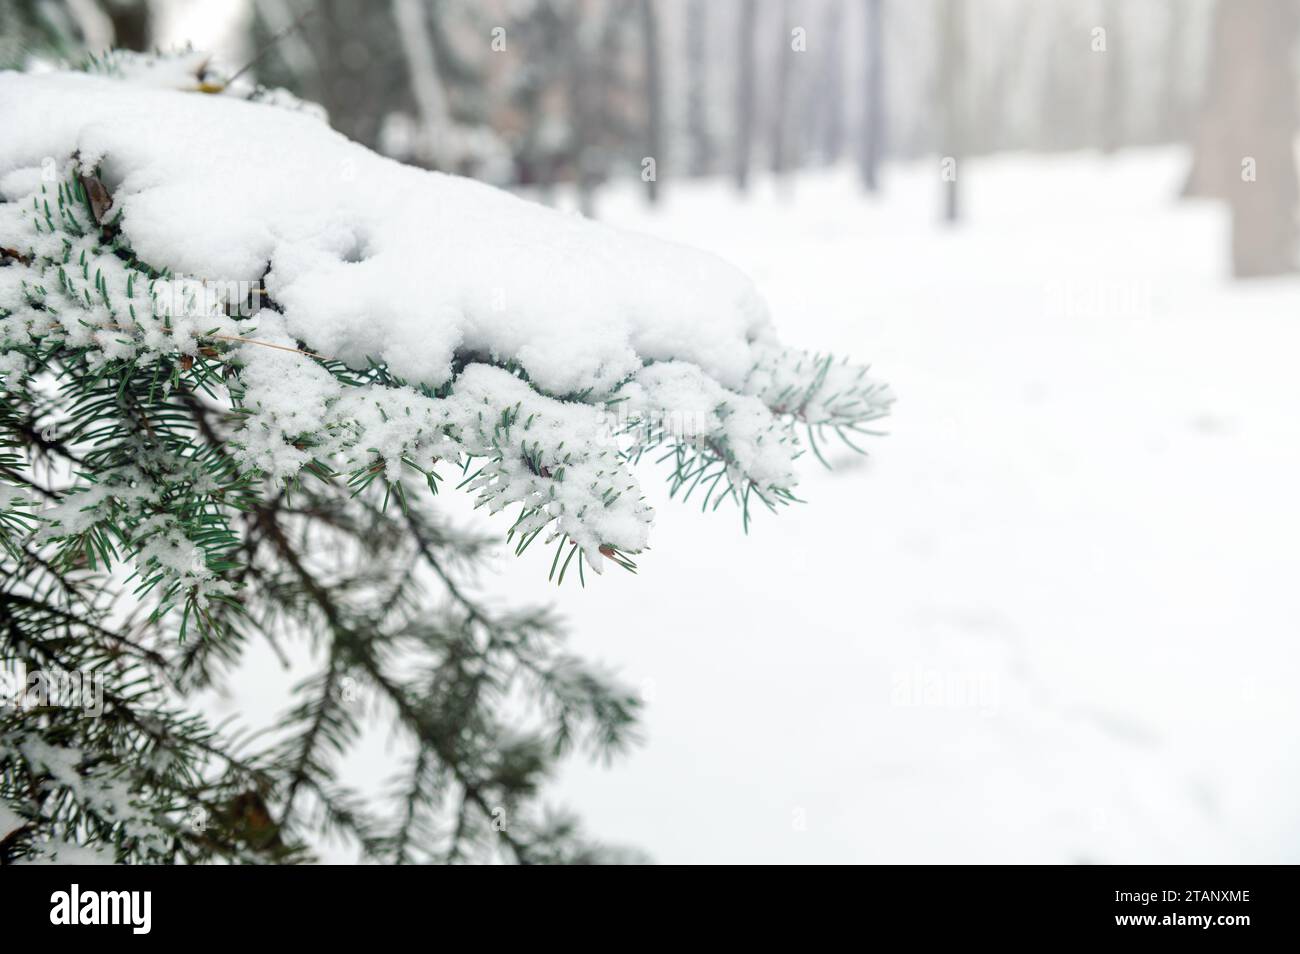 Rama de árbol cubierta de nieve. Rama de árbol de Navidad con nieve blanca. Invierno parque nevado o bosque Foto de stock